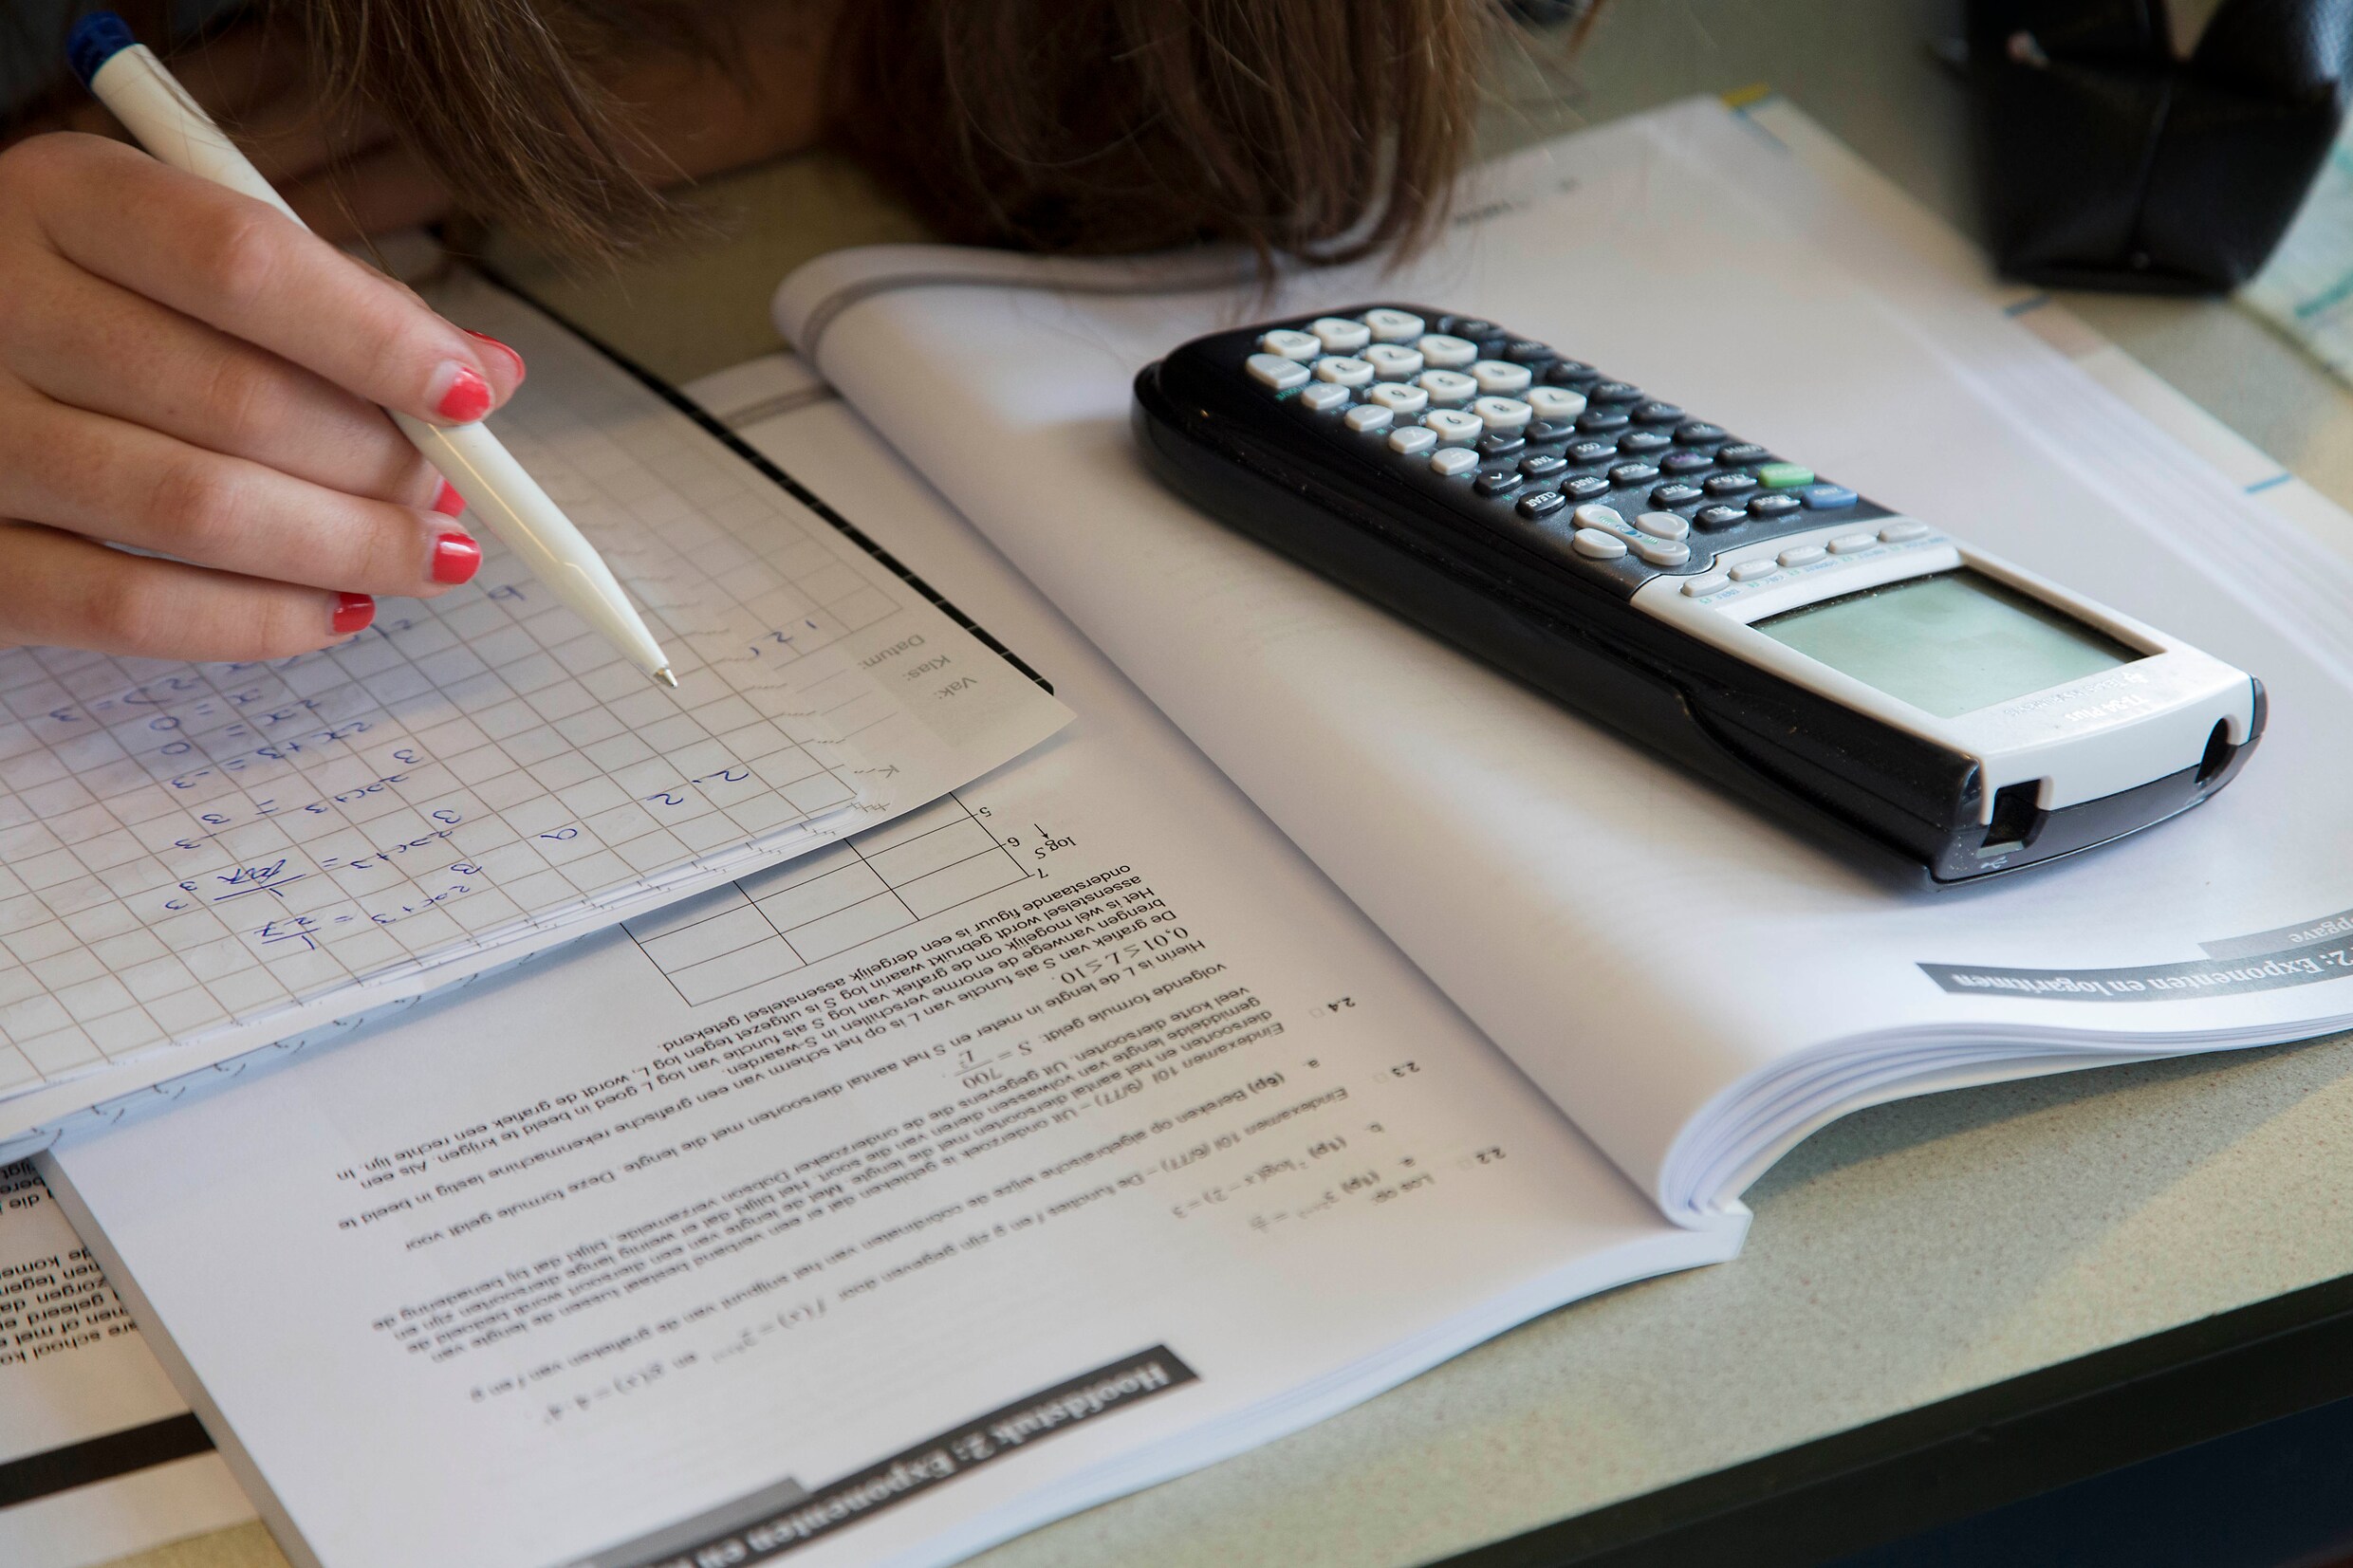 De kwaliteit van het wiskundeonderwijs is in gevaar door lerarentekort